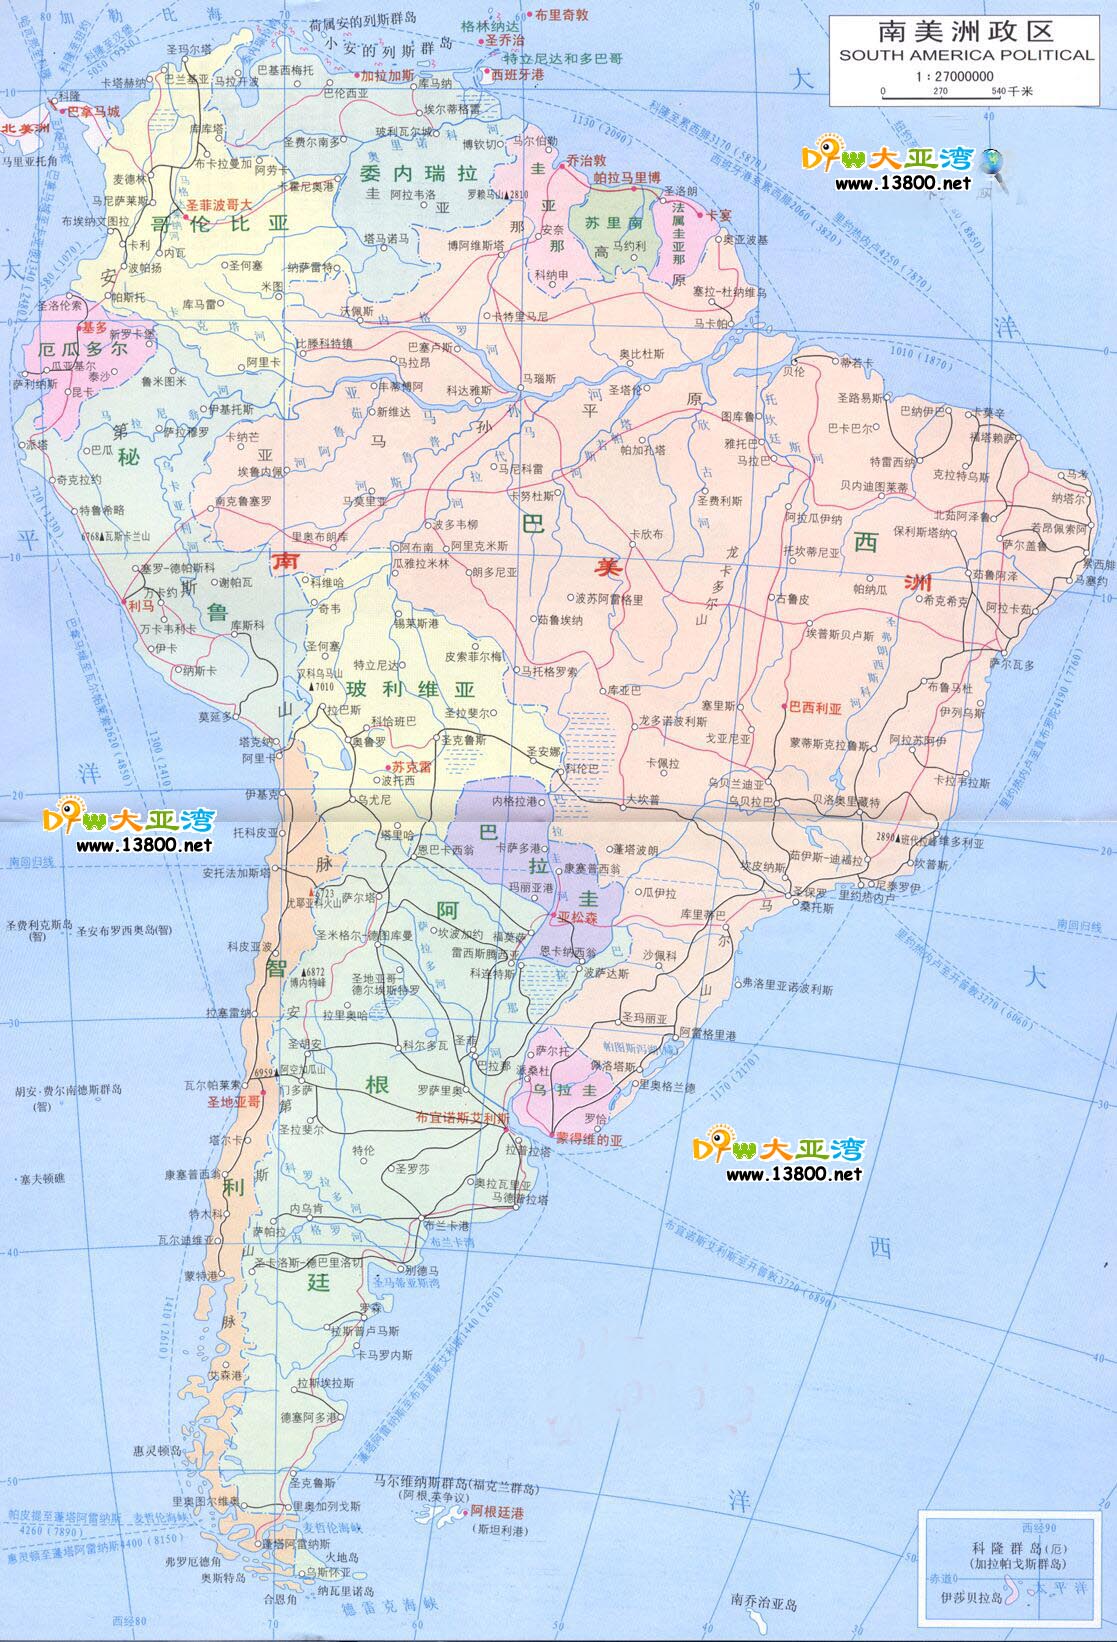 南美洲地图_南美洲地图库_地图窝